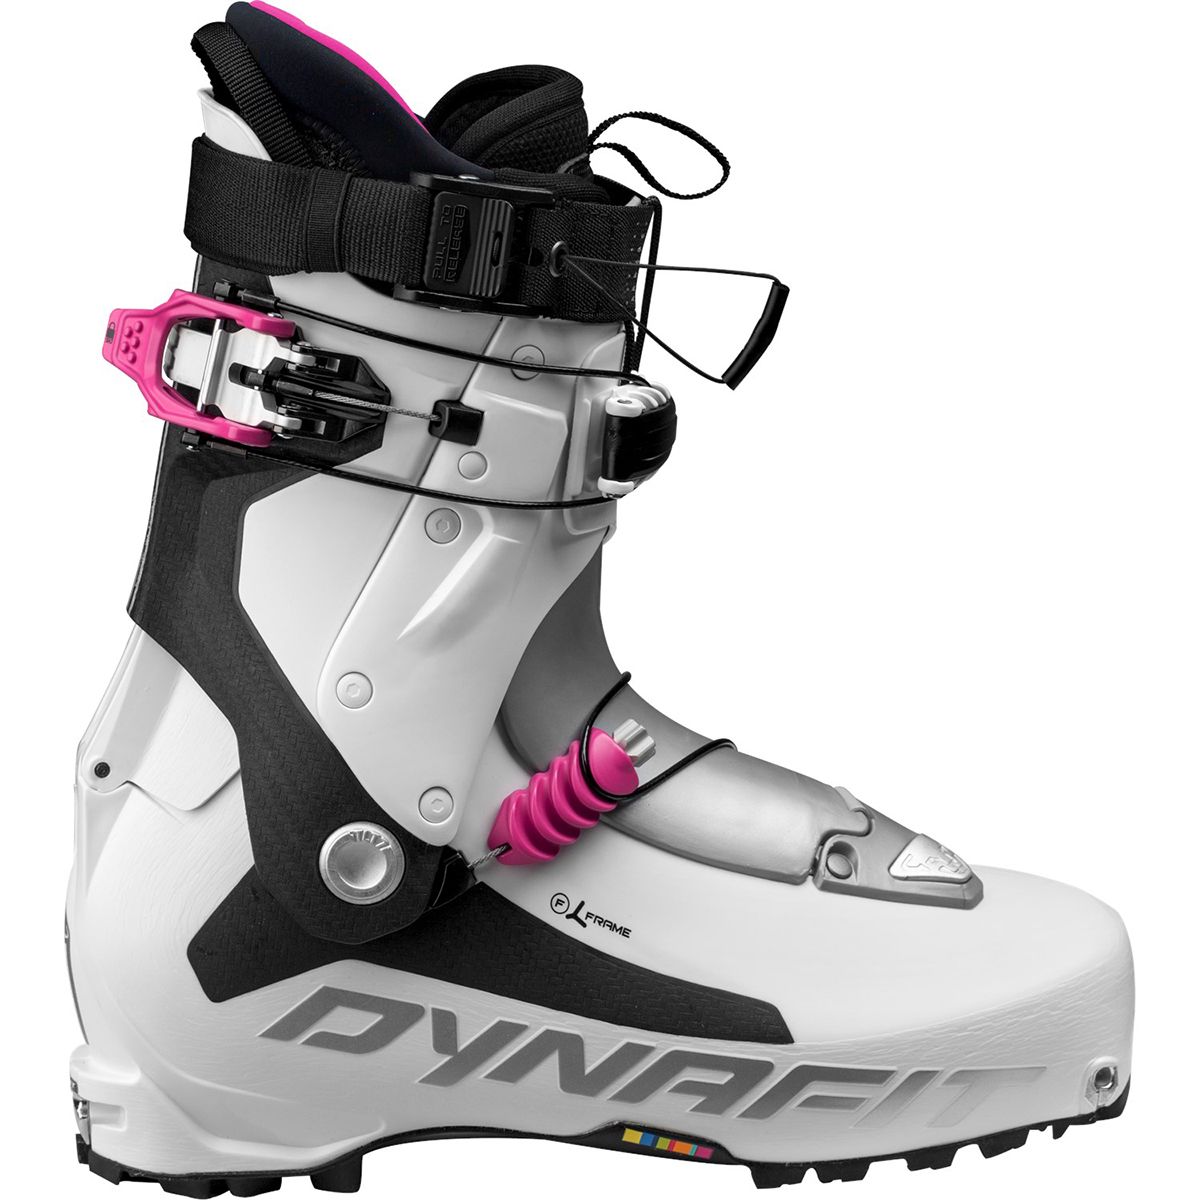 Dynafit TLT7 Expedition CR Ski Boot - Women's White/Fuchsia